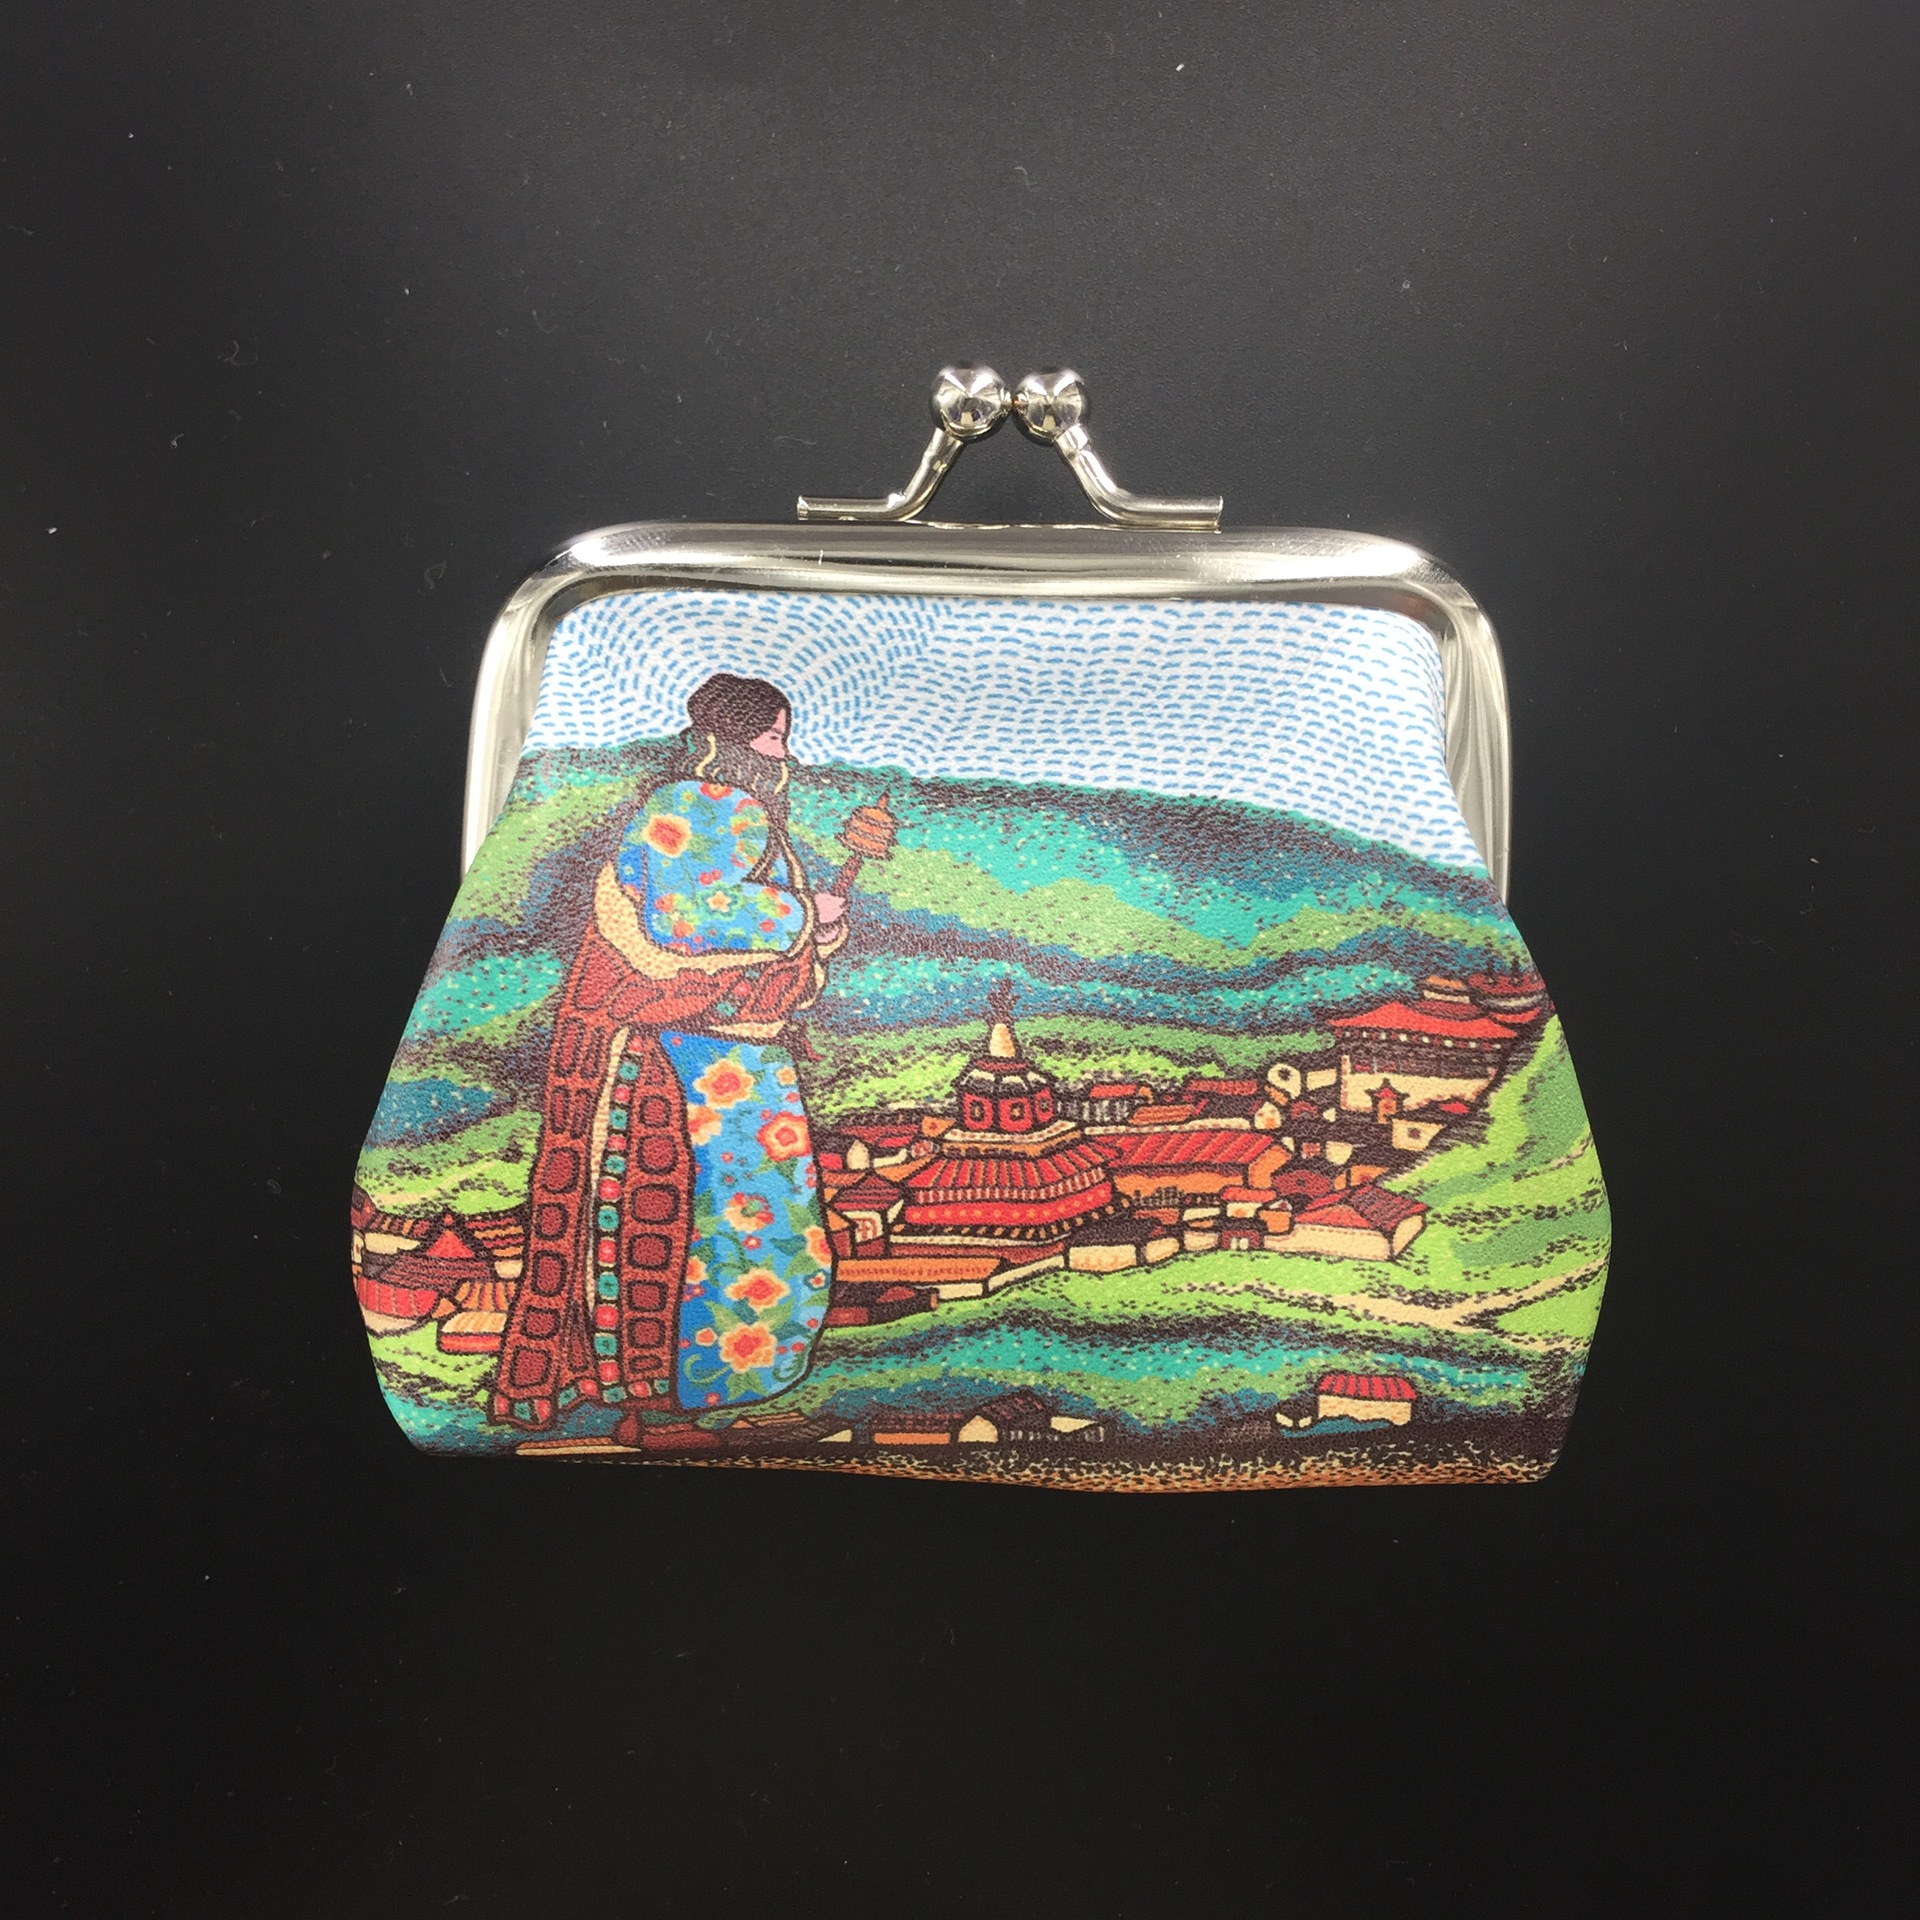 厂家直销西藏拉萨尼泊尔文创旅游景点纪念品零钱包创意礼品民族风